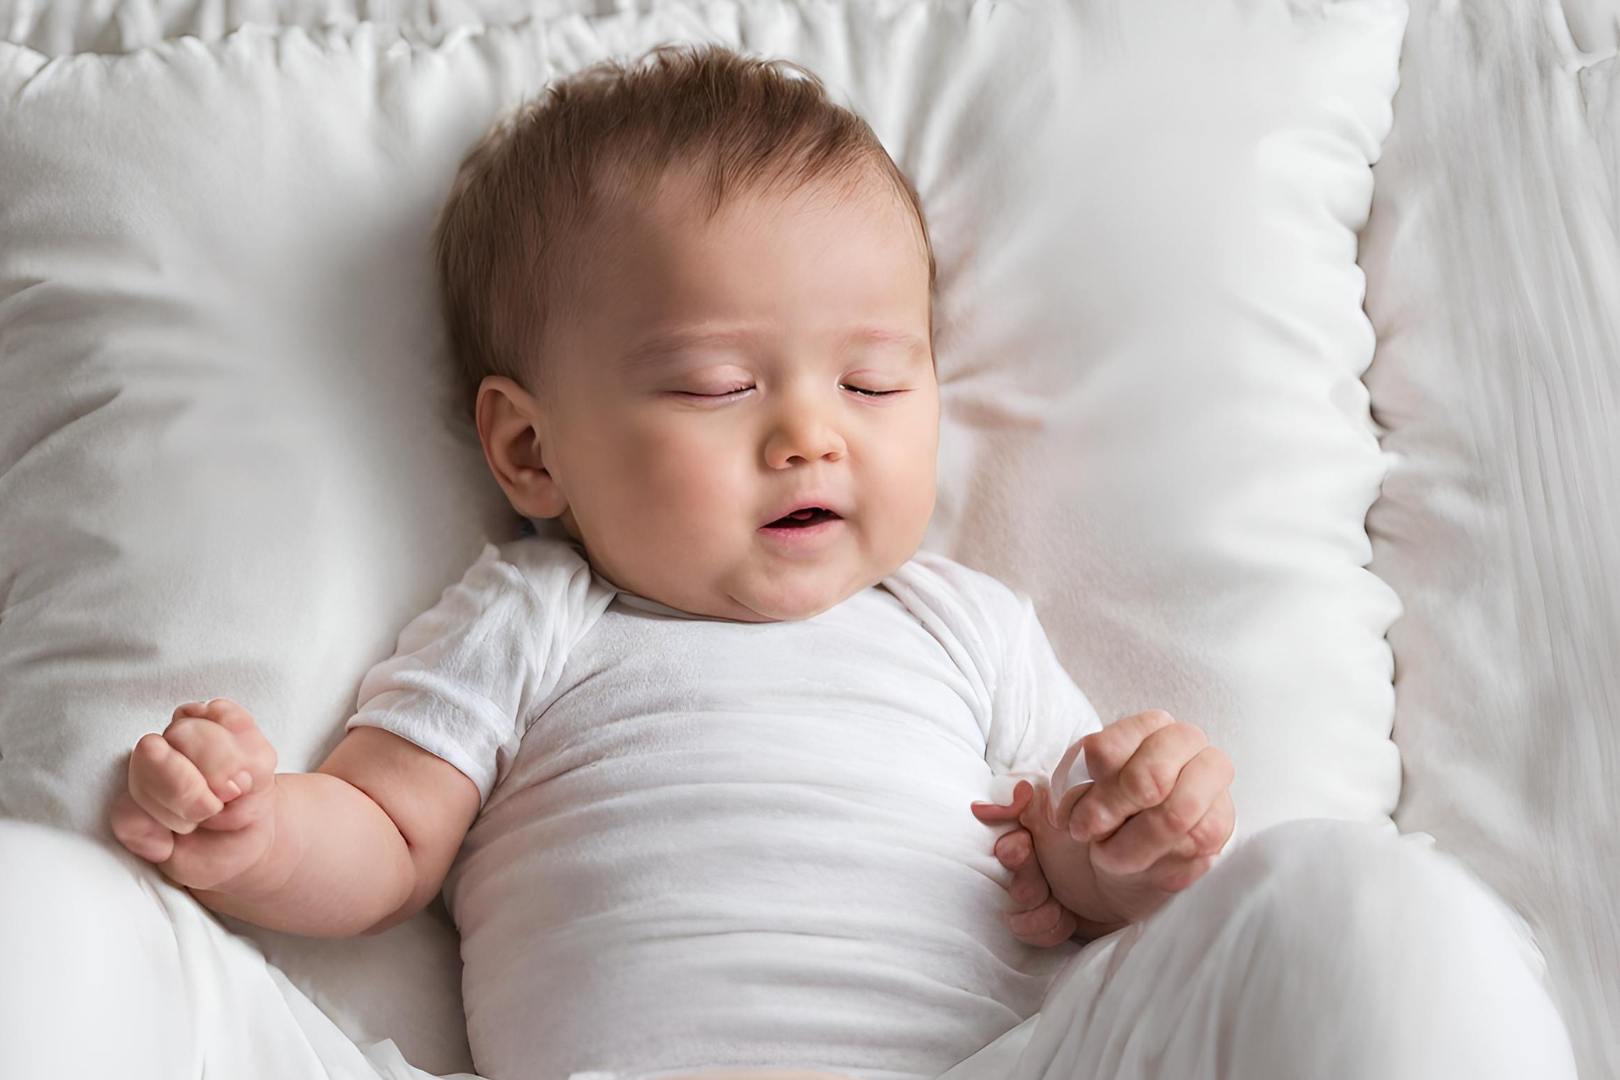 Melhores Travesseiros Anti Refluxo para Bebê: 5 Ótimas Opções